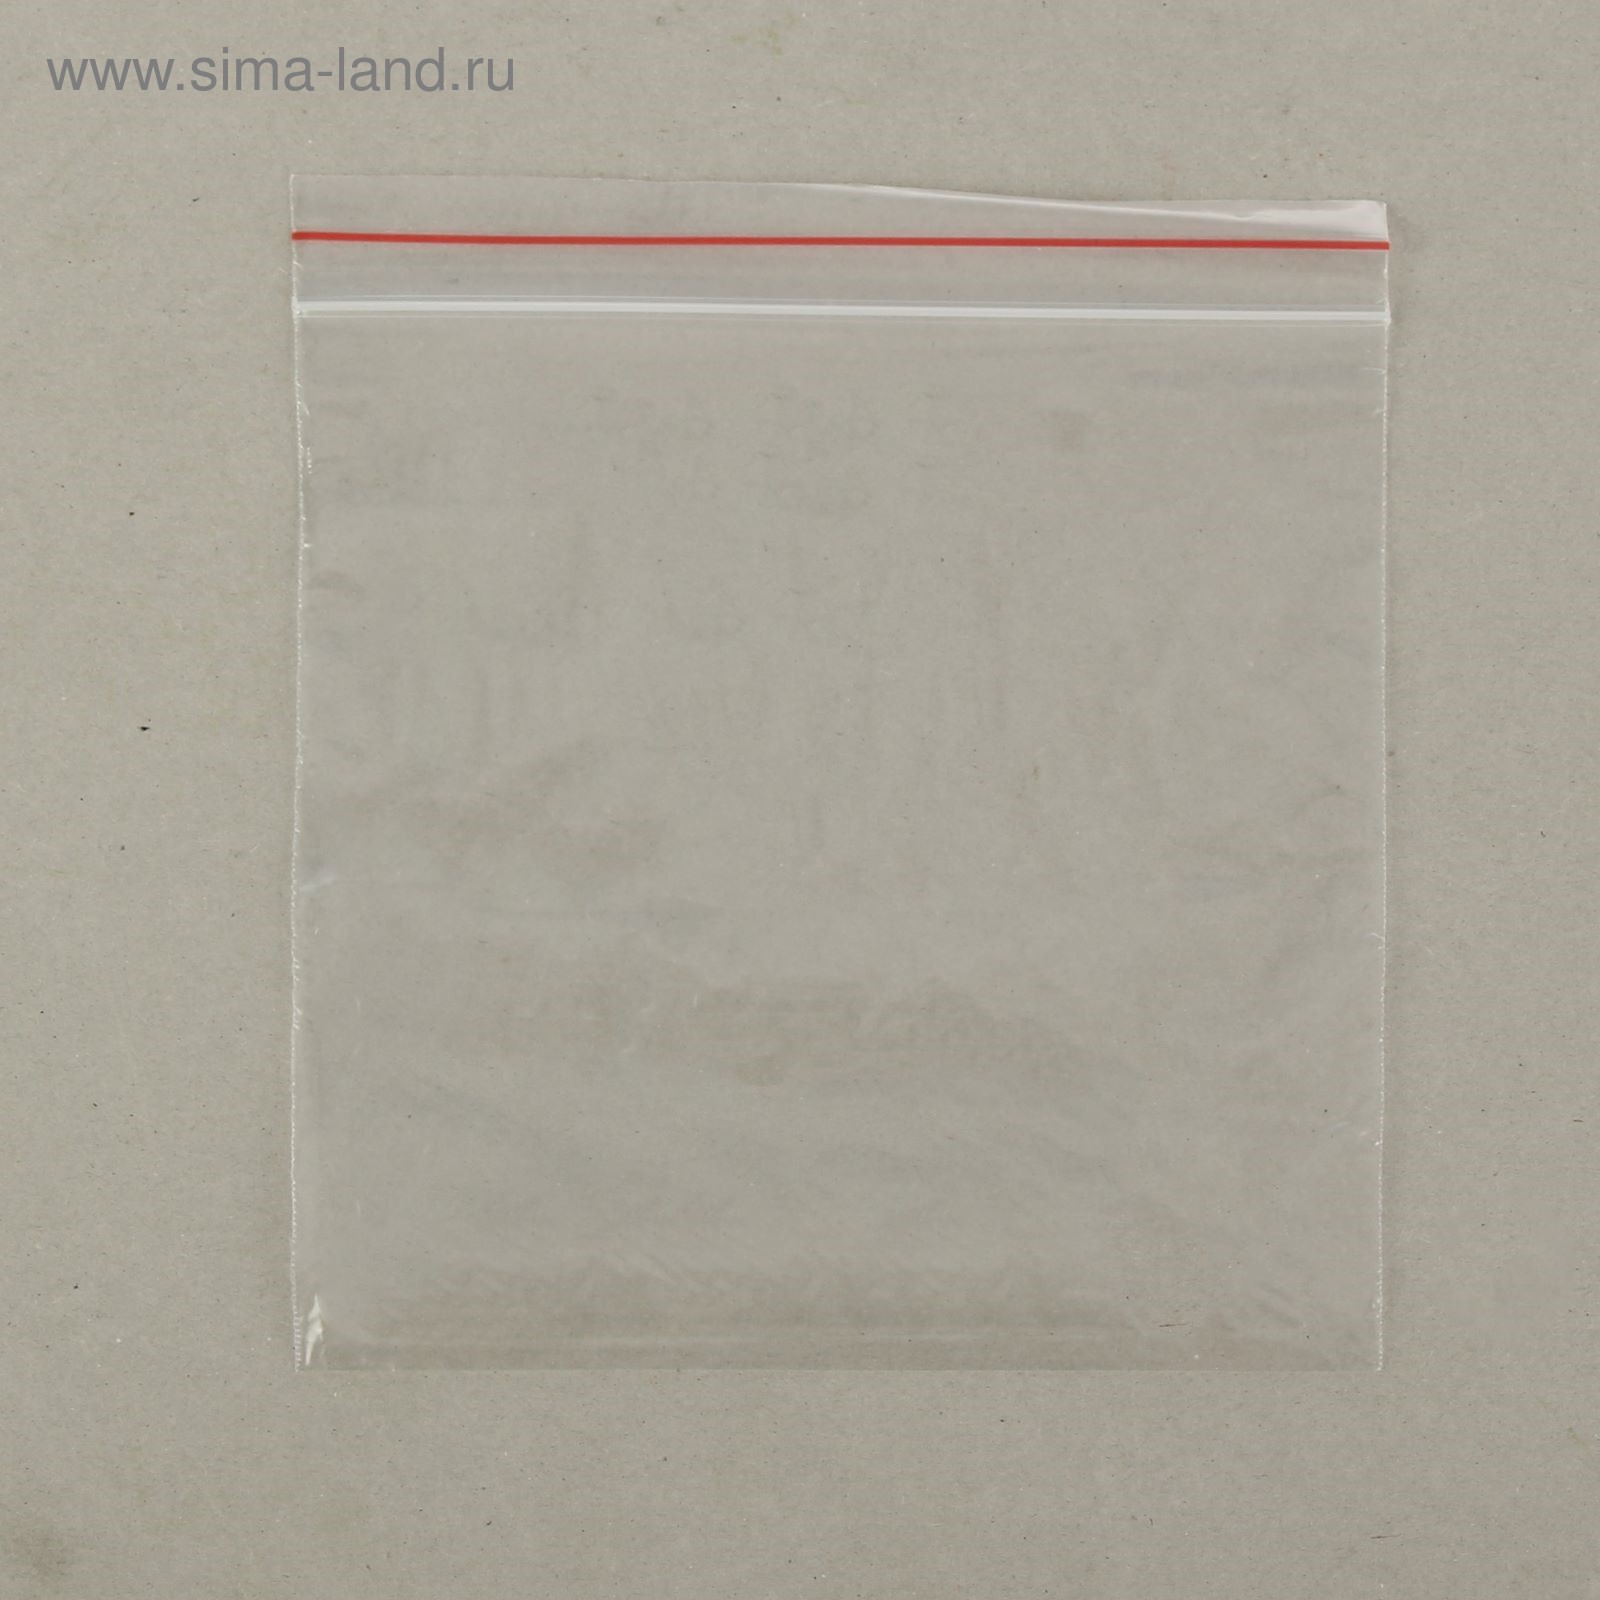 Пакет zip lock 10 х 10 см, 35 мкм (с красной полосой)